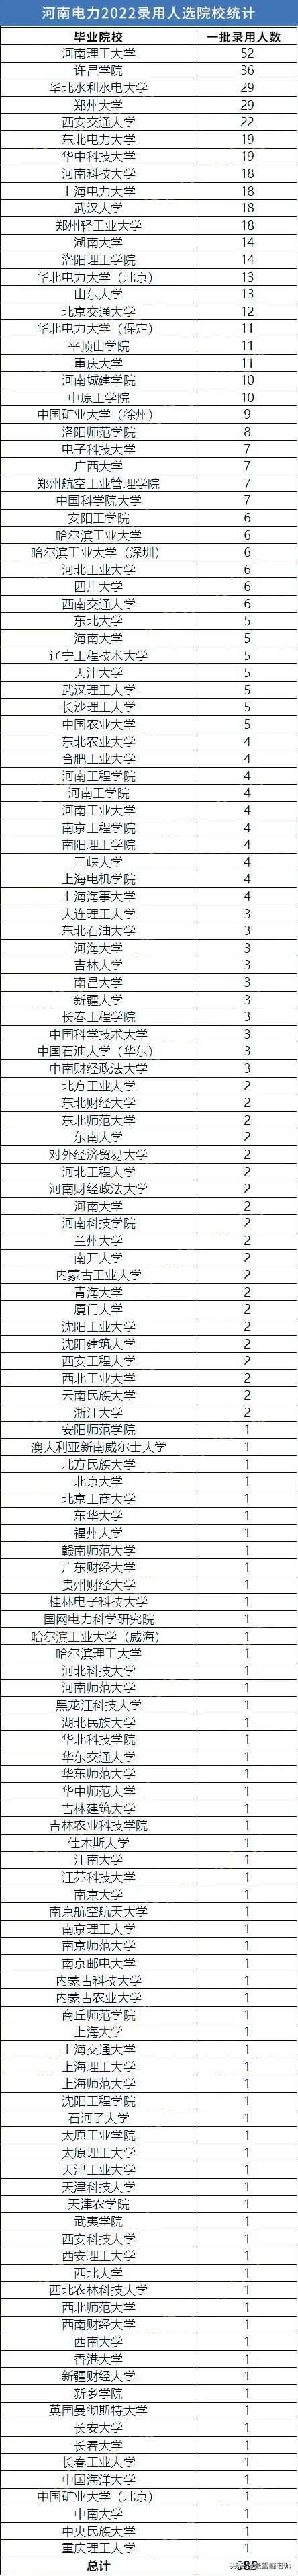 上海铁路局人才招聘网（26省公布22年国家电网录用名单）